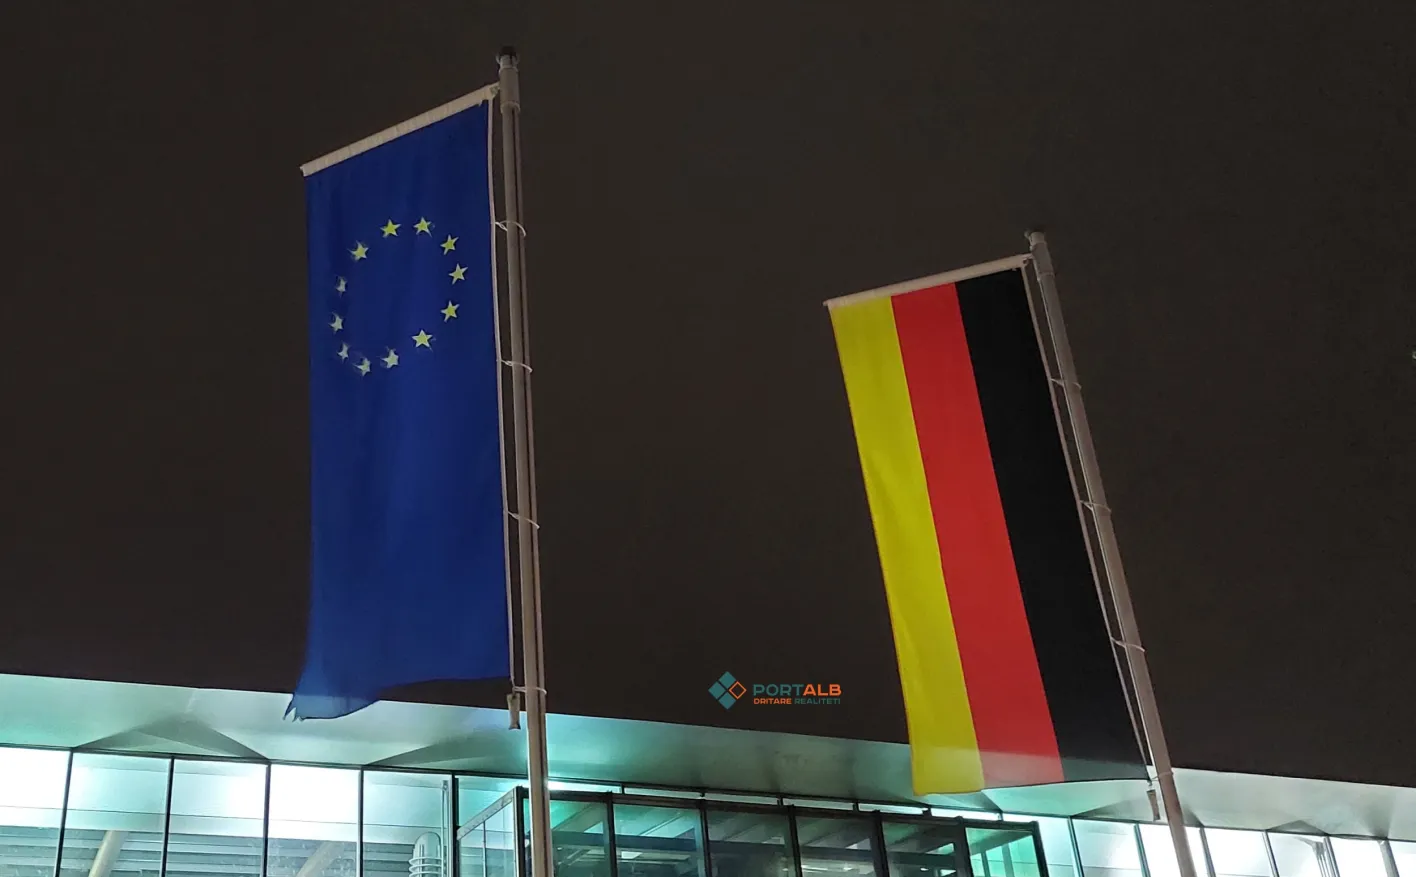 Flamur i Gjermanisë dhe Bashkimit Evropian (BE) në Dortmund. Foto nga Faton Curri / Portalb.mk